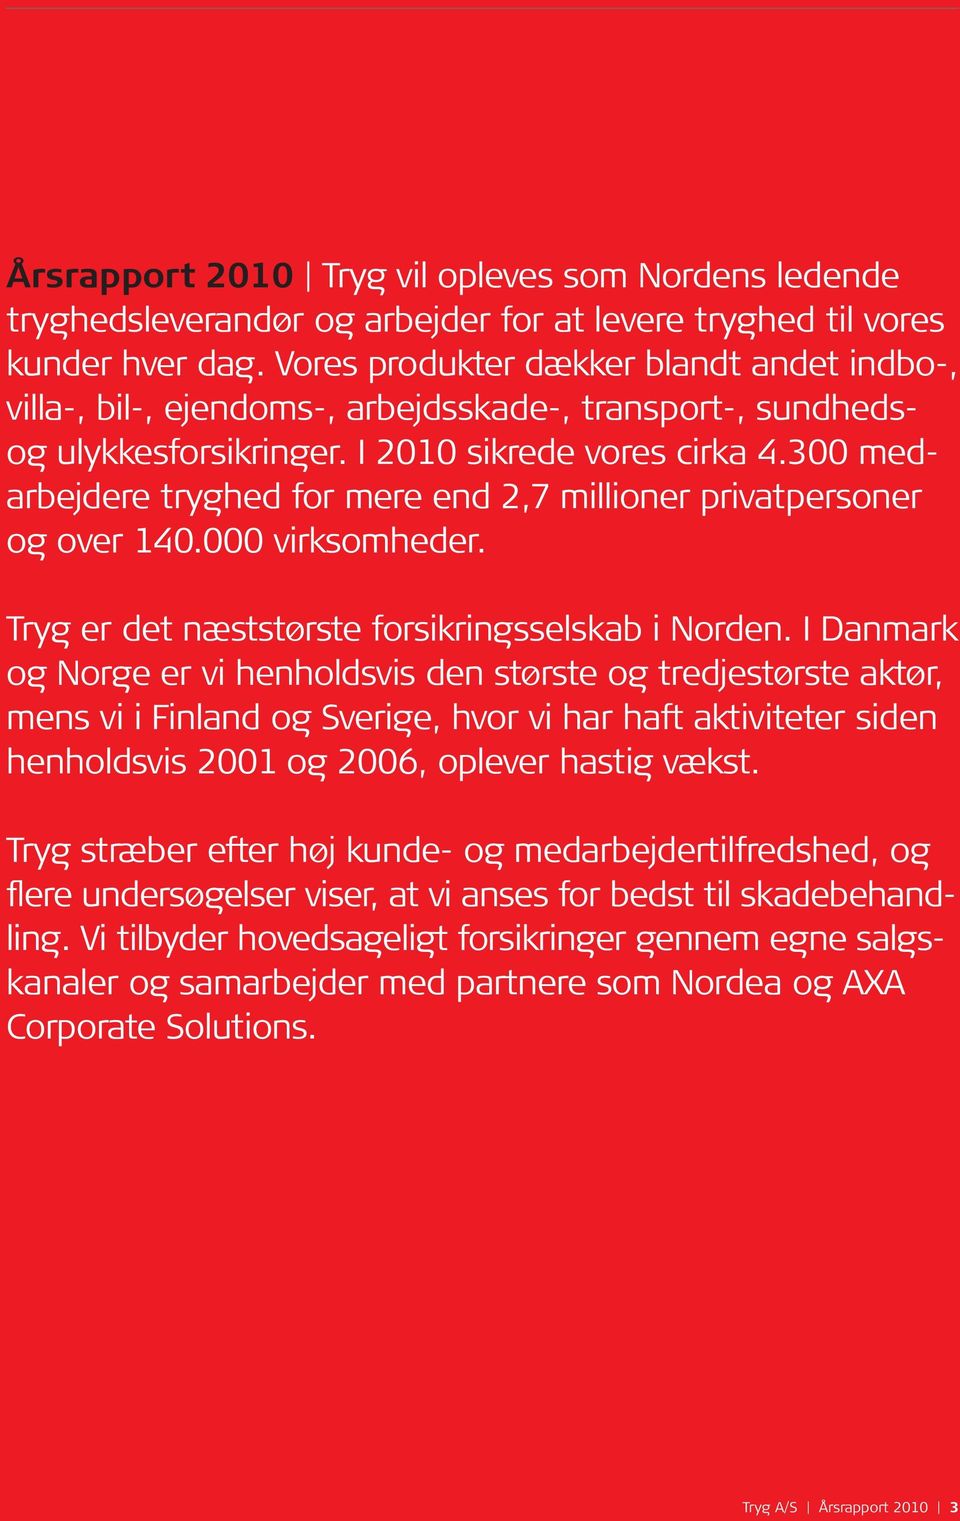 300 medarbejdere tryghed for mere end 2,7 millioner privatpersoner og over 140.000 virksomheder. Tryg er det næststørste forsikringsselskab i Norden.